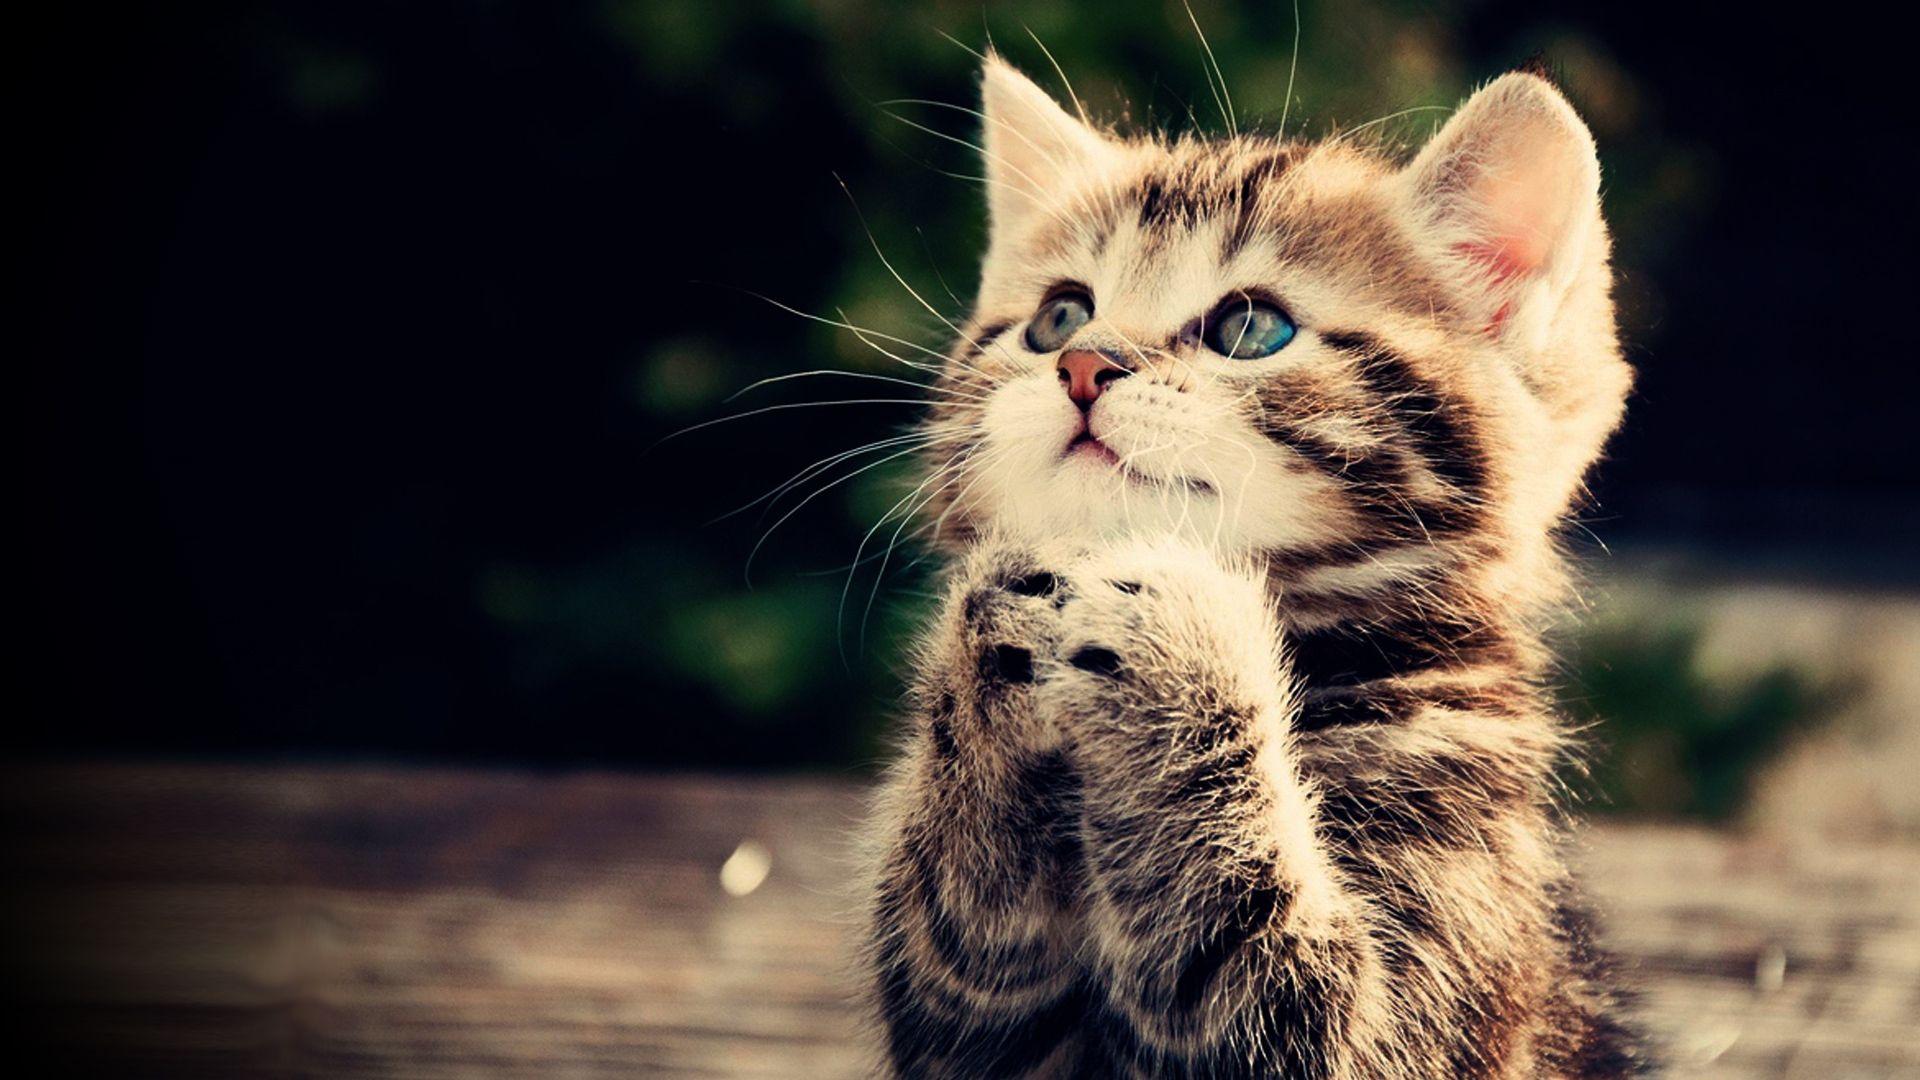 Praying kitten Full HD wallpaper, cute animal picture, 1080p